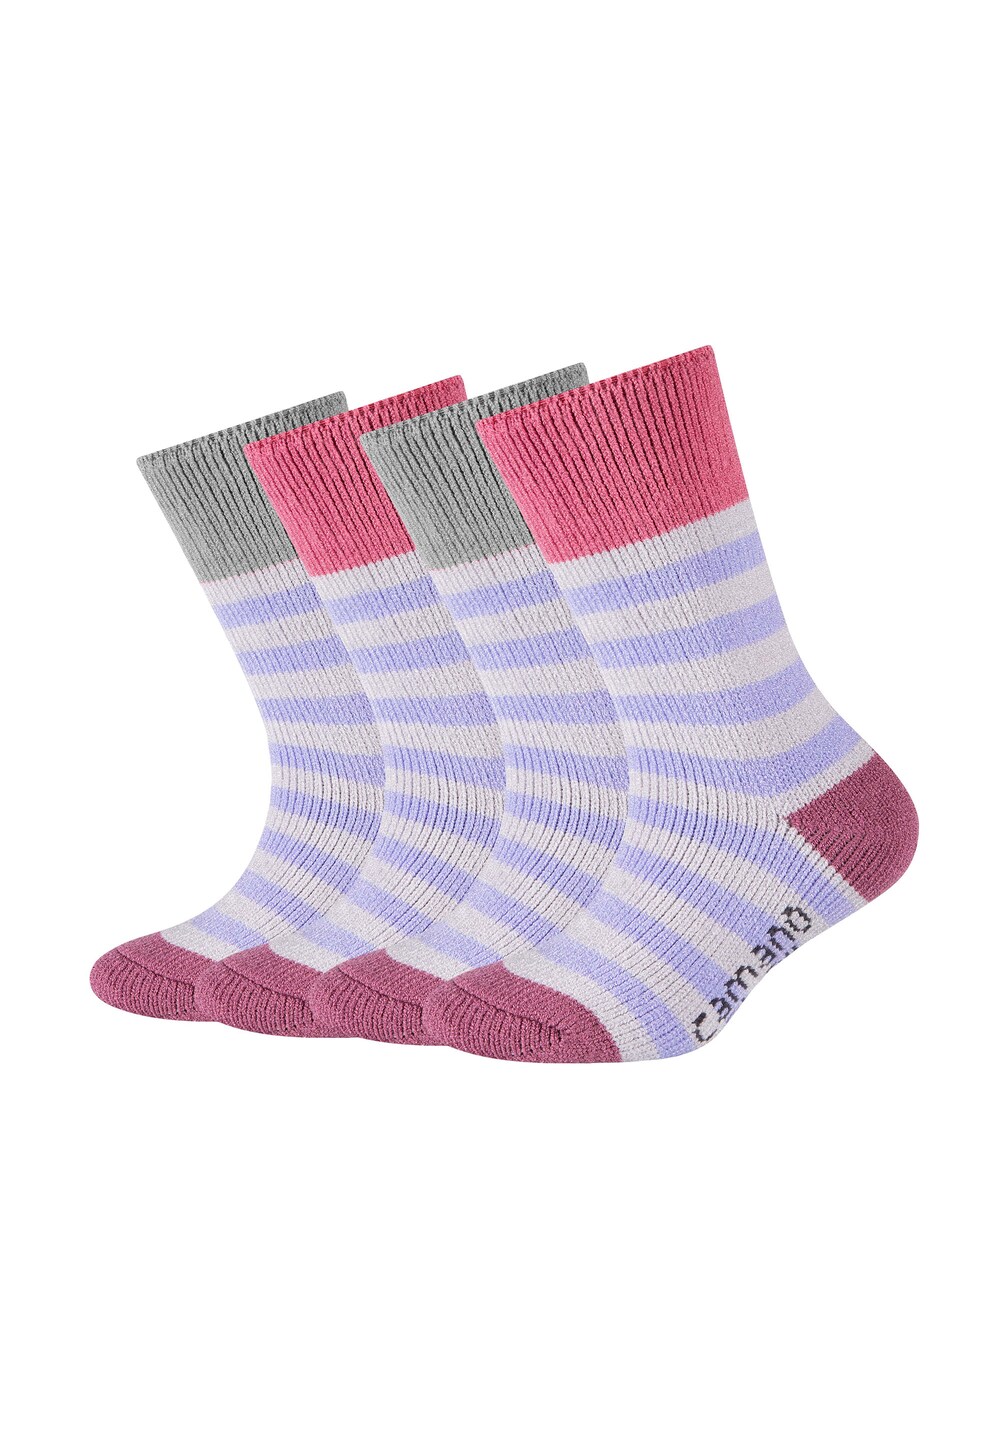 Носки Camano, смешанные цвета носки h i s смешанные цвета